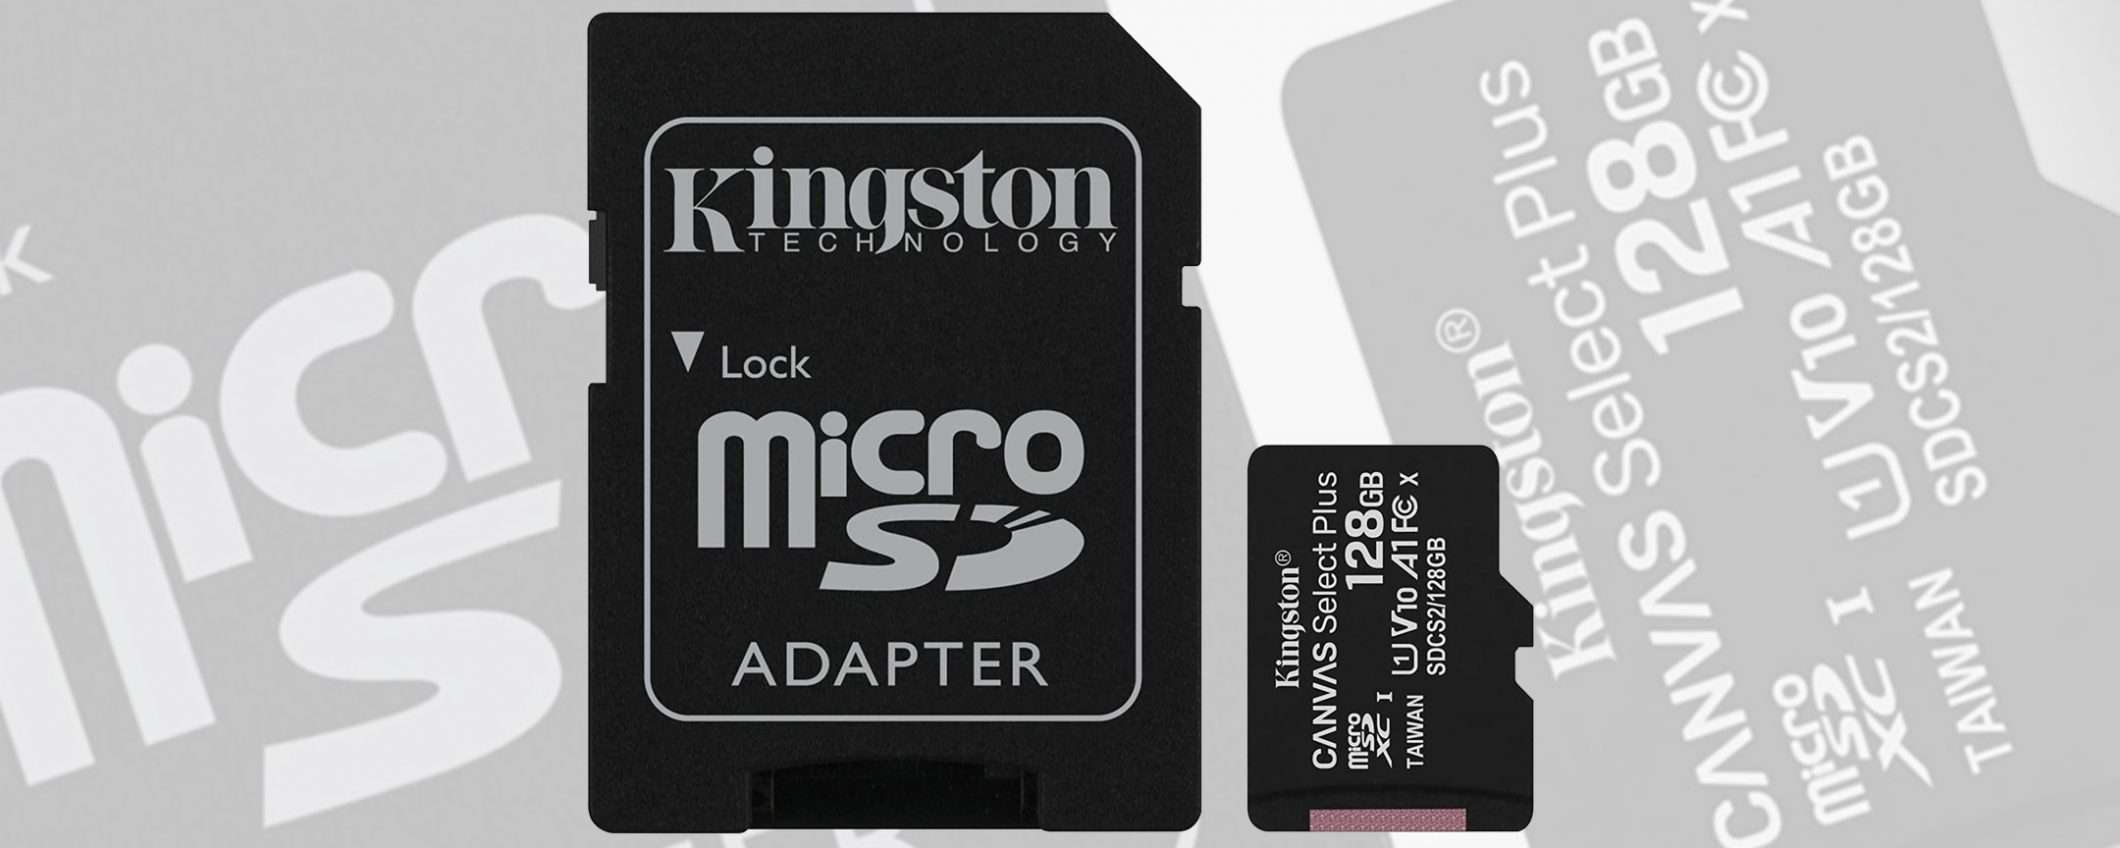 Solo 17 euro per la microSD di Kingston da 128 GB